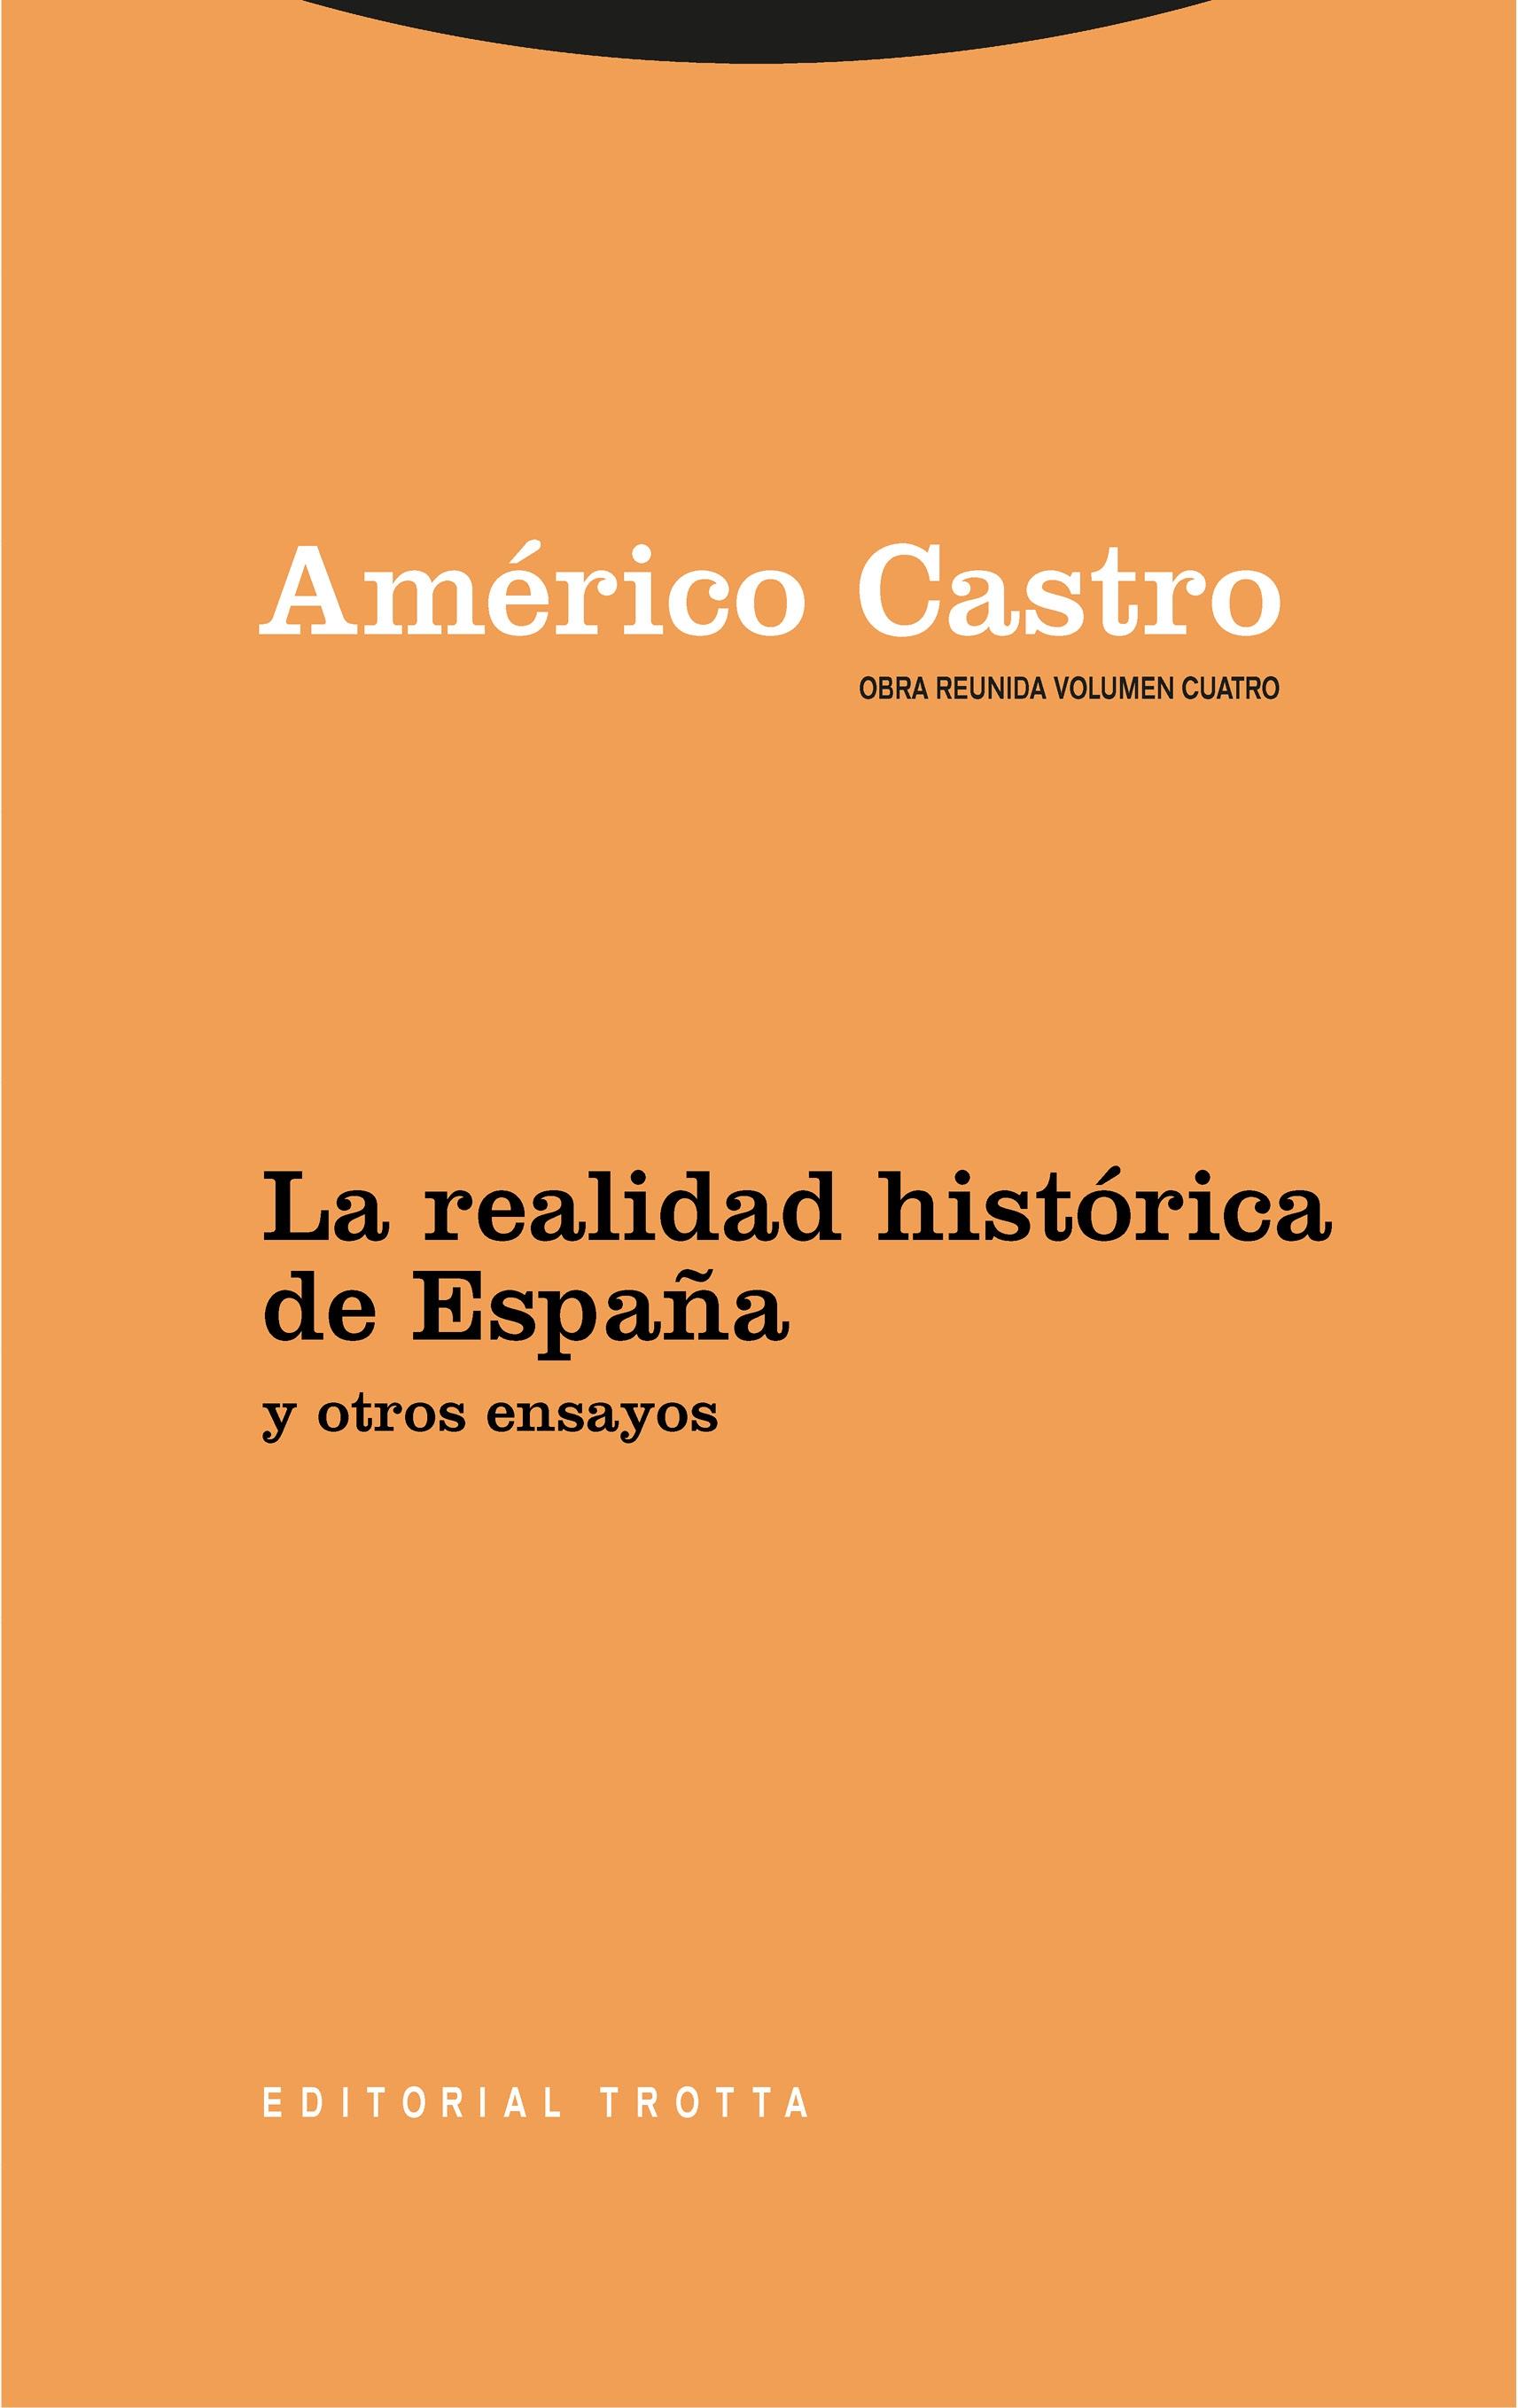 Obra Reunida Americo Castro Vol 4 "La Realidad Historica de España y Otros Ensayos"